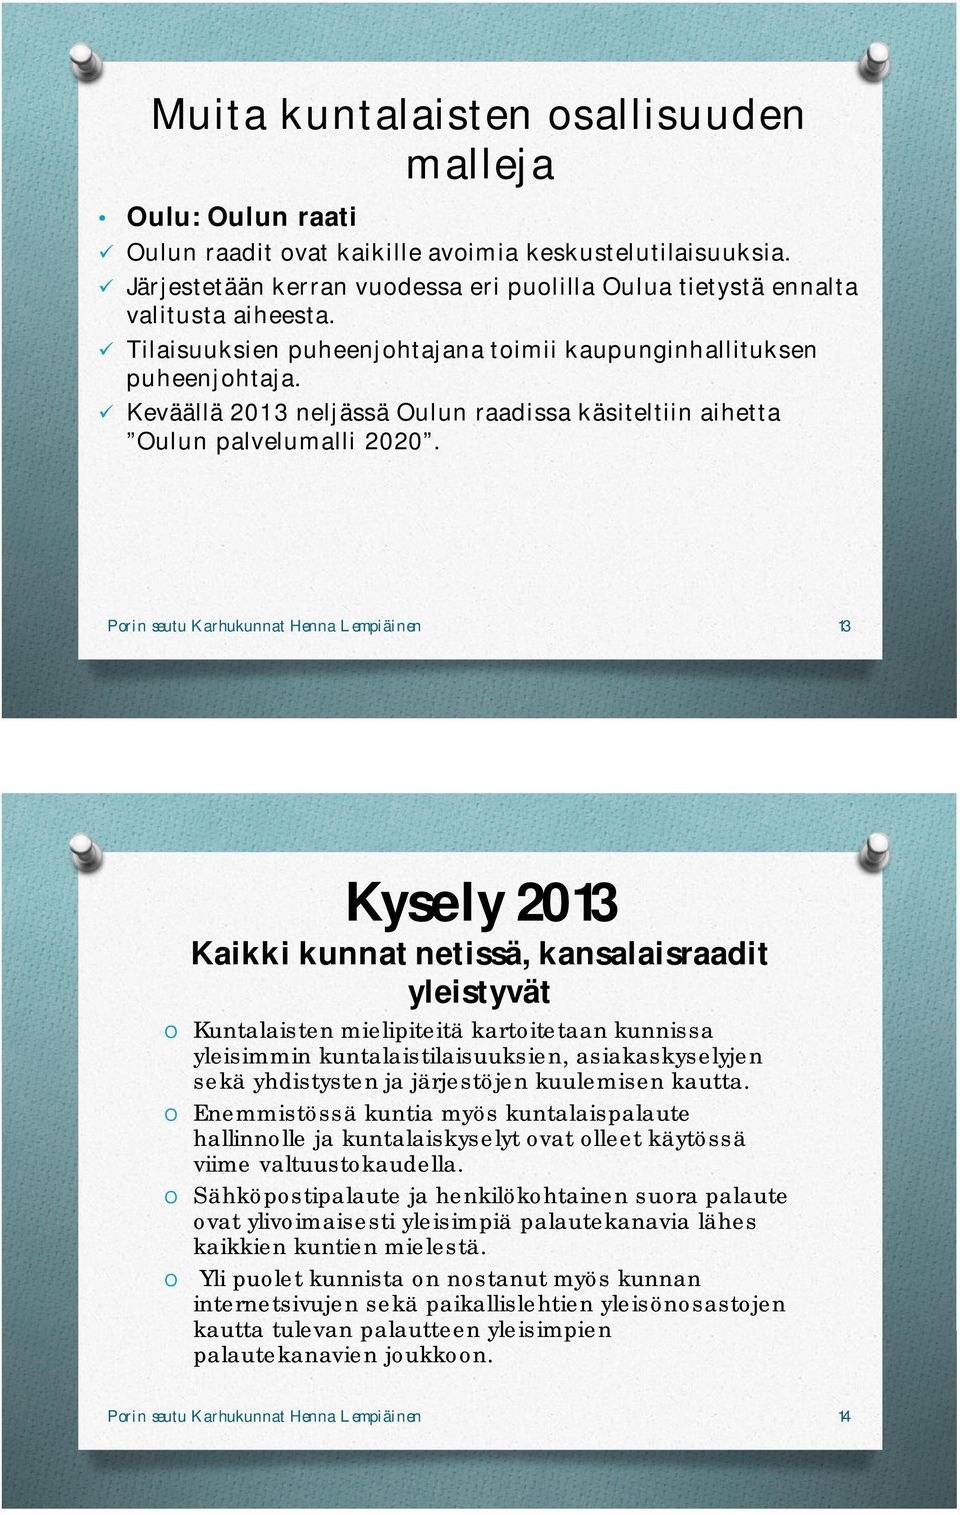 Keväällä 2013 neljässä Oulun raadissa käsiteltiin aihetta Oulun palvelumalli 2020.